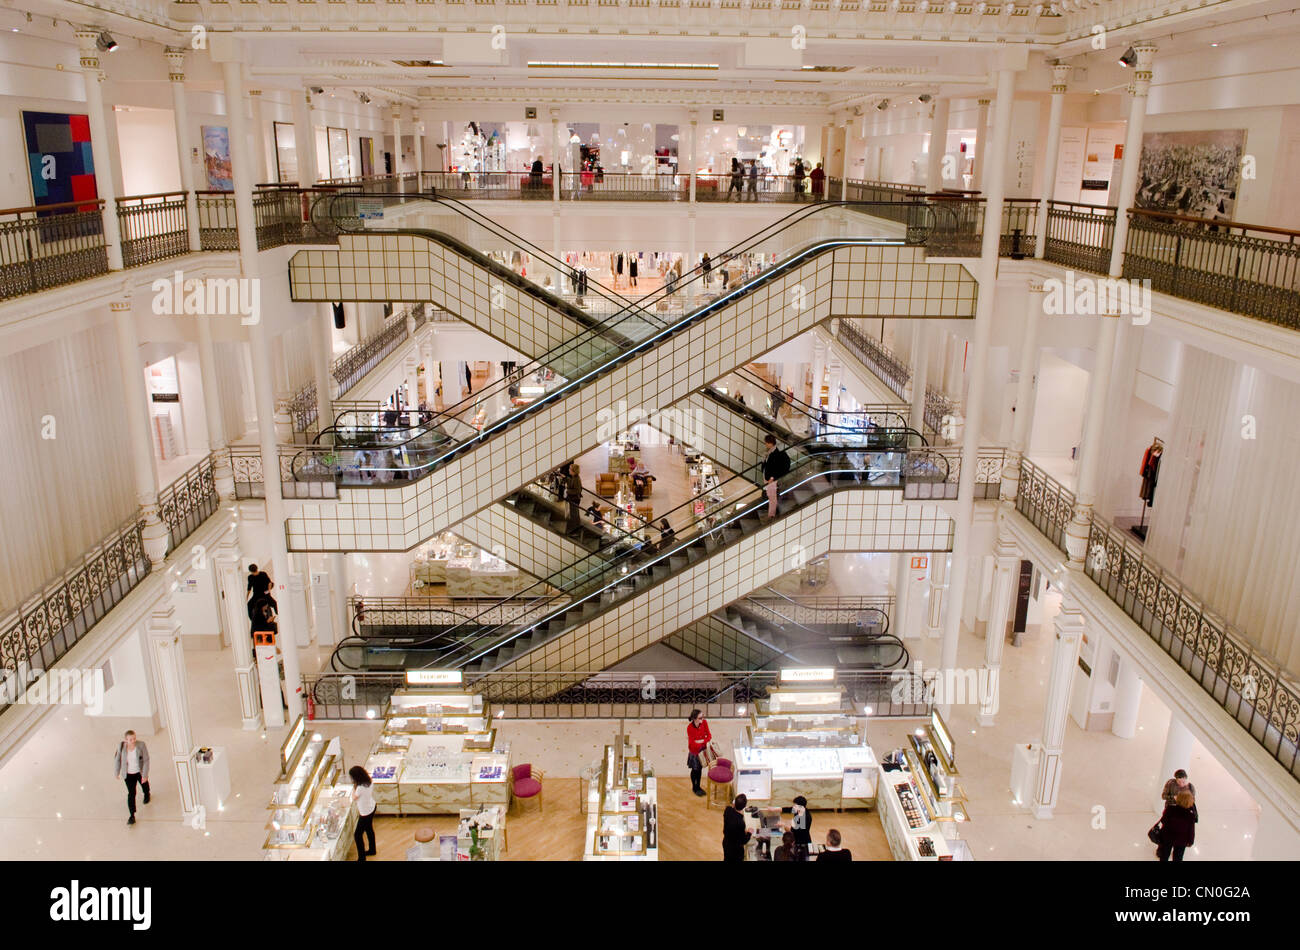 Interior of 'Le Bon Marche' department store. St Germain des Pres area of Paris, France Stock Photo